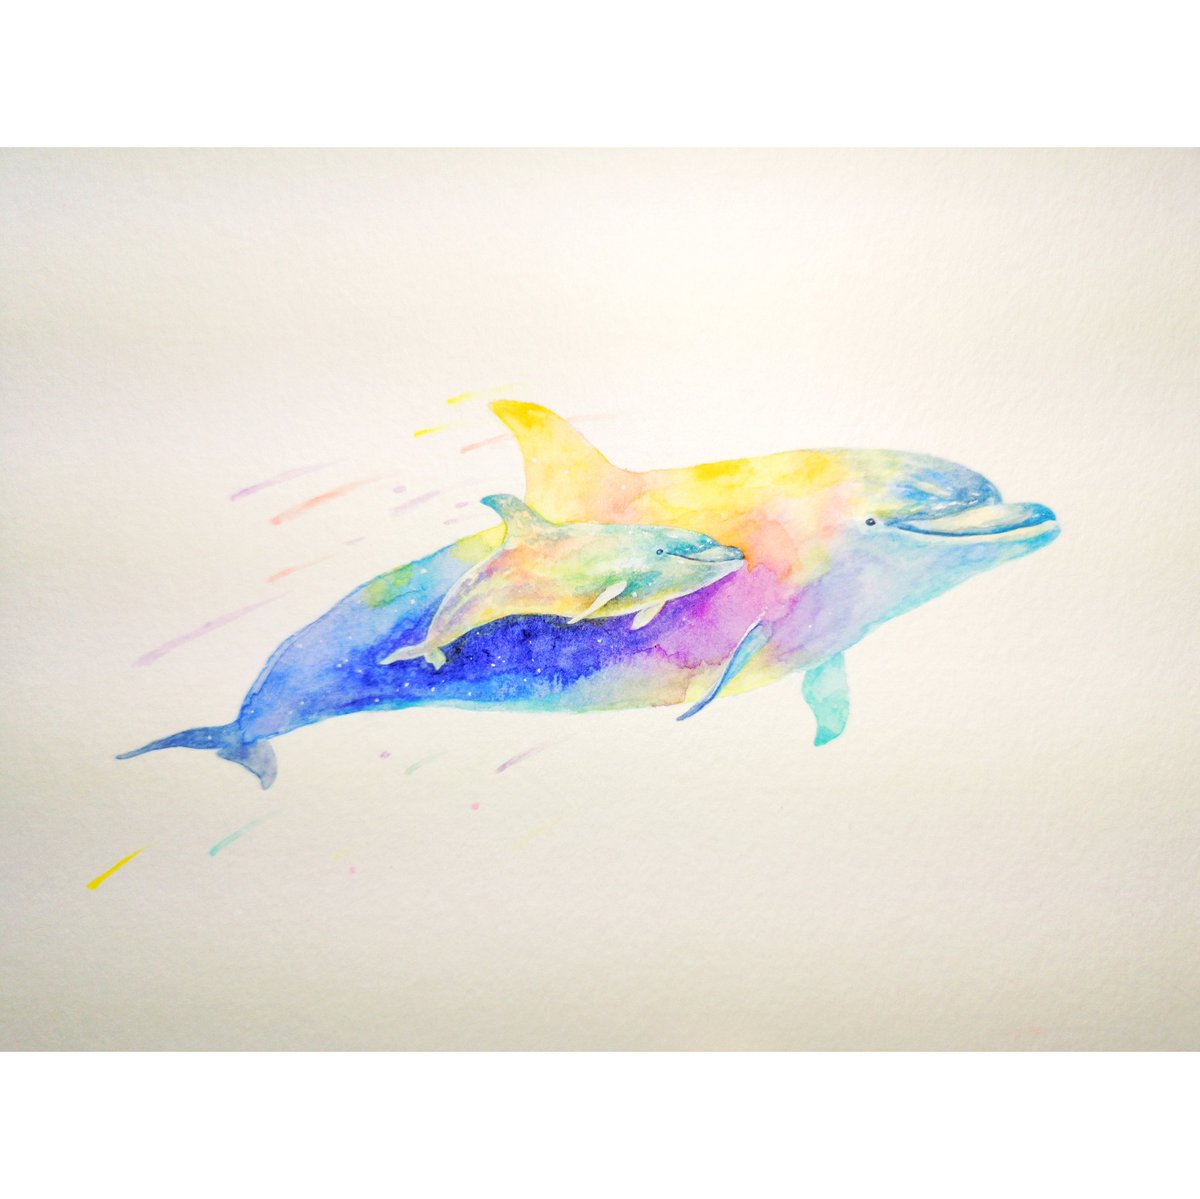 Hirotoshi Kanou Pa Twitter イルカの親子の絵 透明水彩で着彩 幸せそうに泳ぐ姿をカラフルに描いてみました イルカ 透明水彩 絵描きさんと繋がりたい 絵 イラスト好きな人と繋がりたい イルカ好き